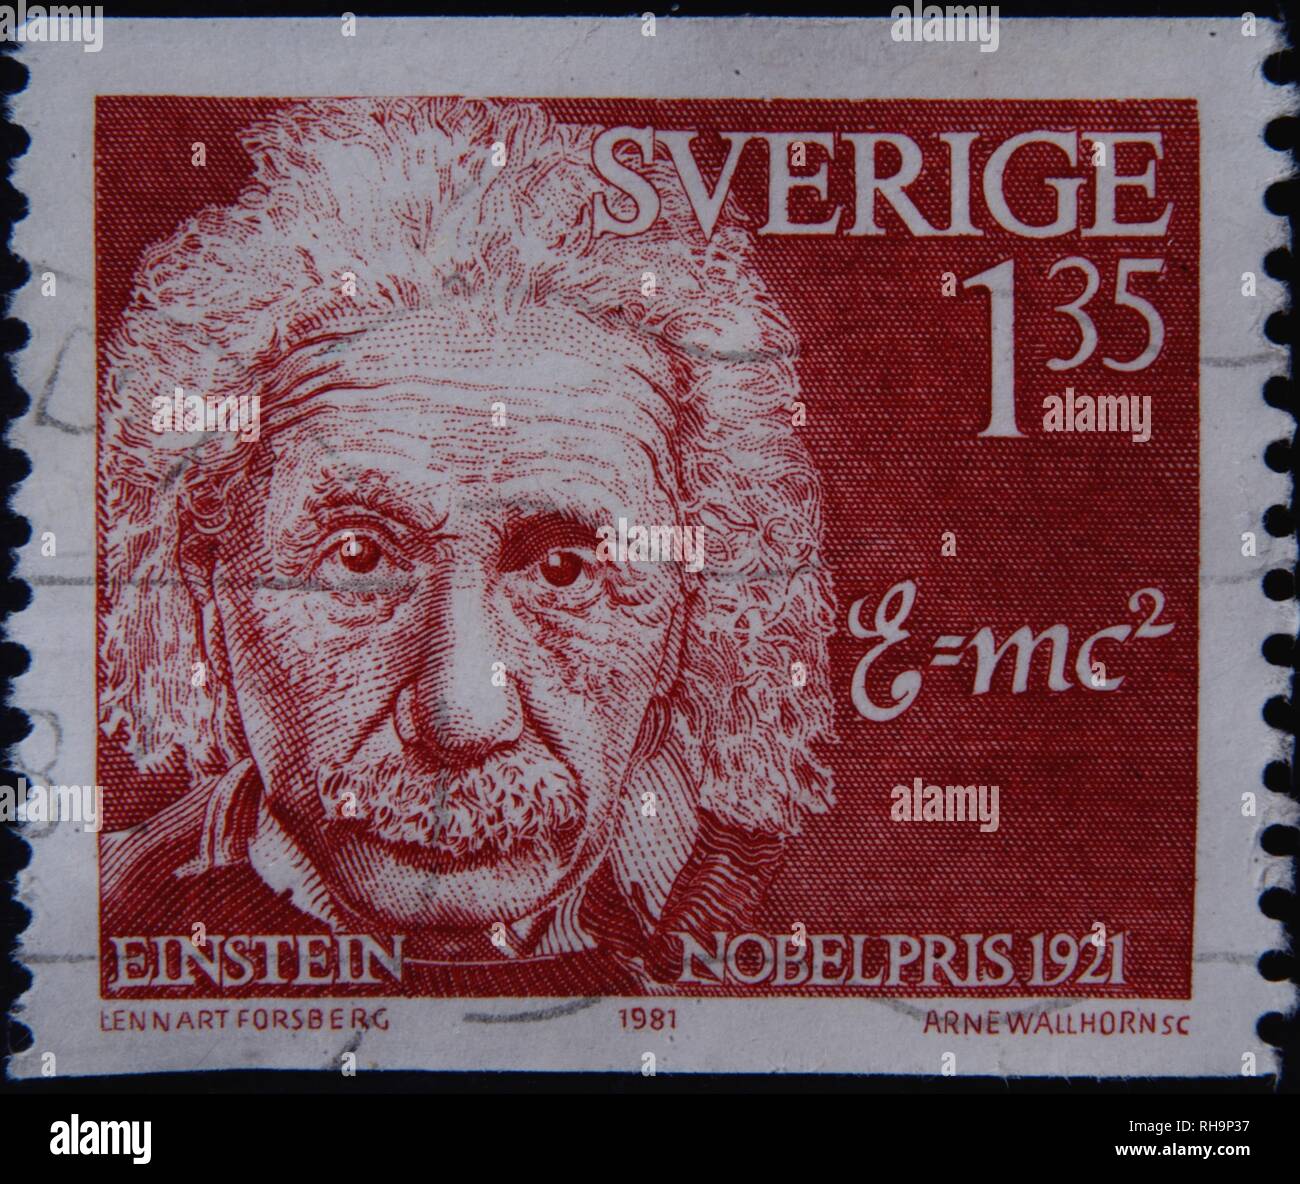 Albert Einstein, a German theoretical physicist, portrait on a Swedish stamp, Sweden Stock Photo